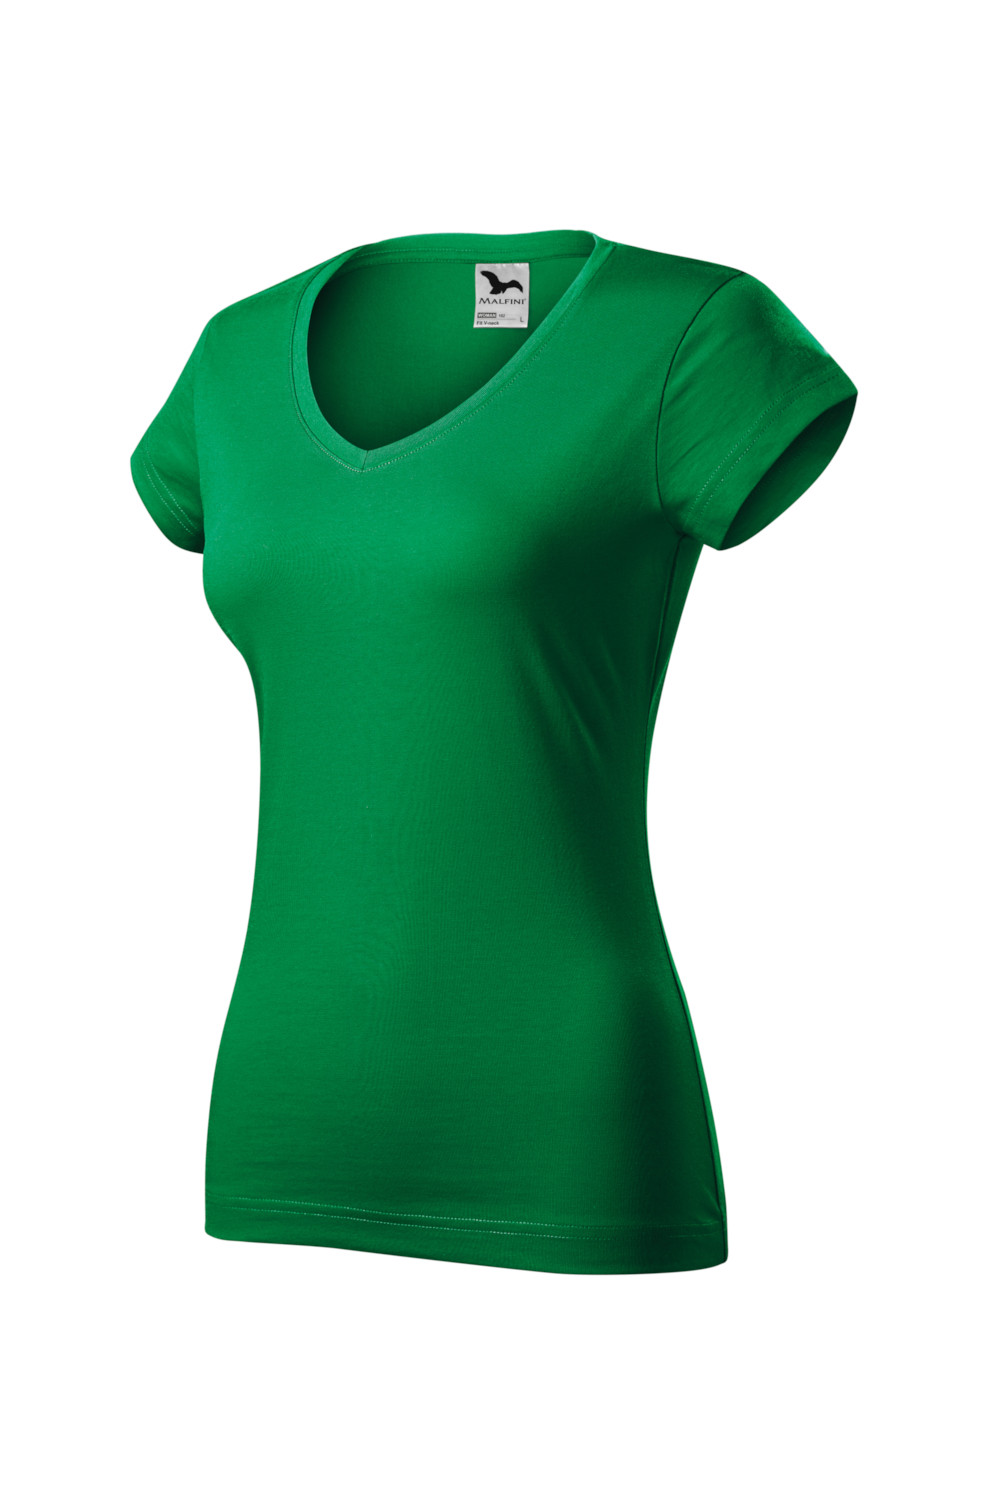 Koszulka damska 100% bawełna V-NECK 162 zieleń trawy